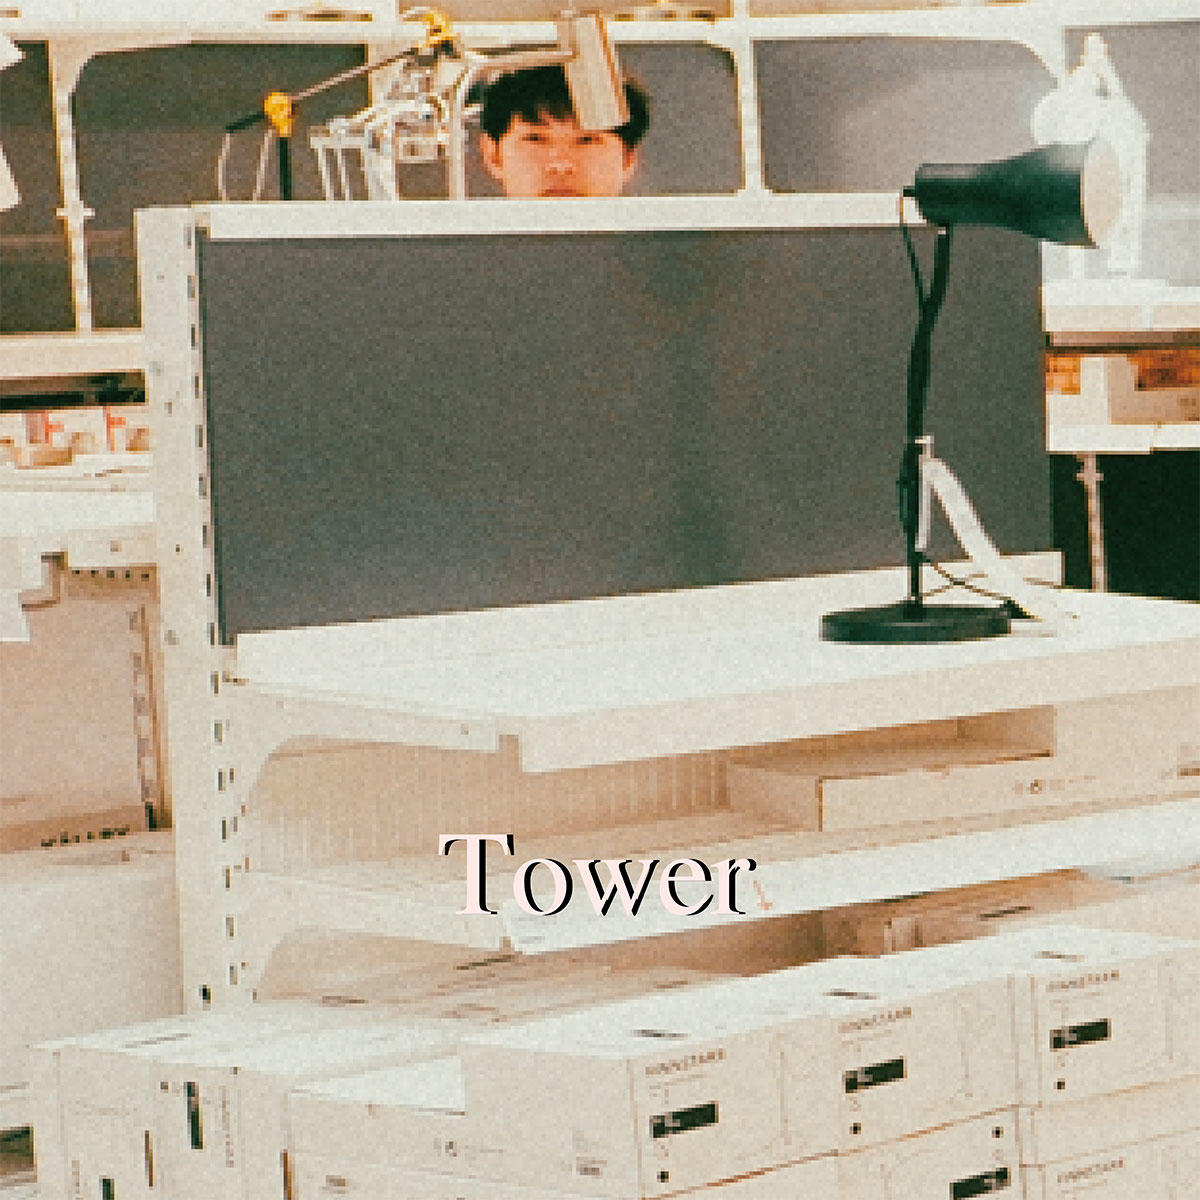 Tower_dsc_jk_20220520.jpg